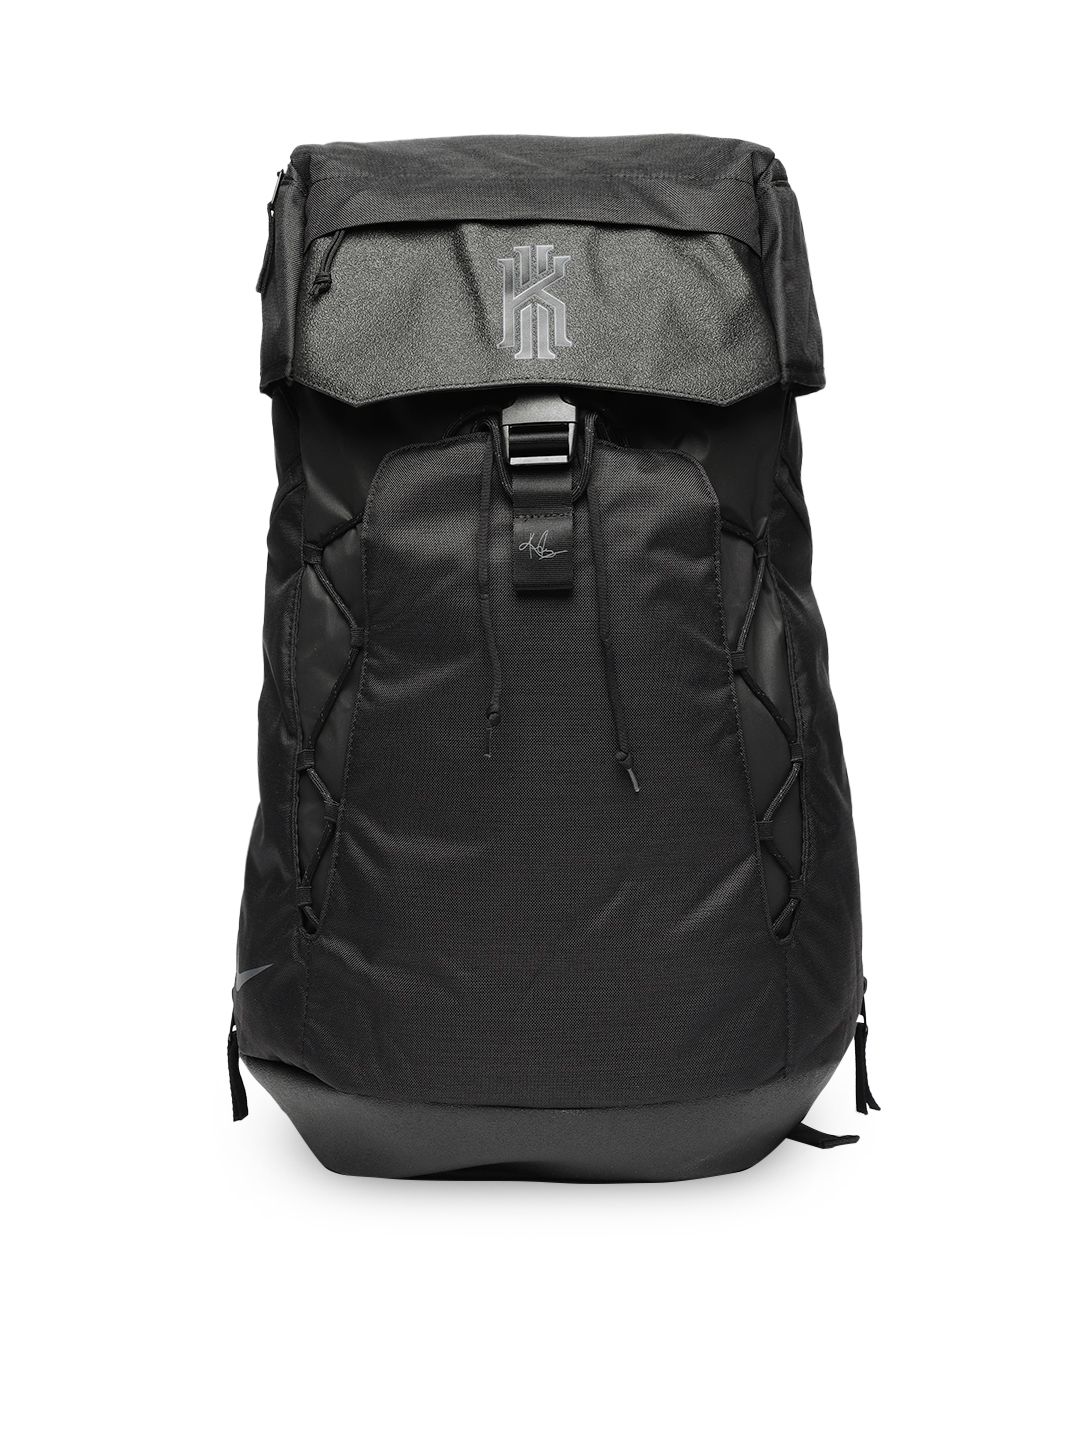 Buy Nike Men Black Solid KYRIE Backpack 